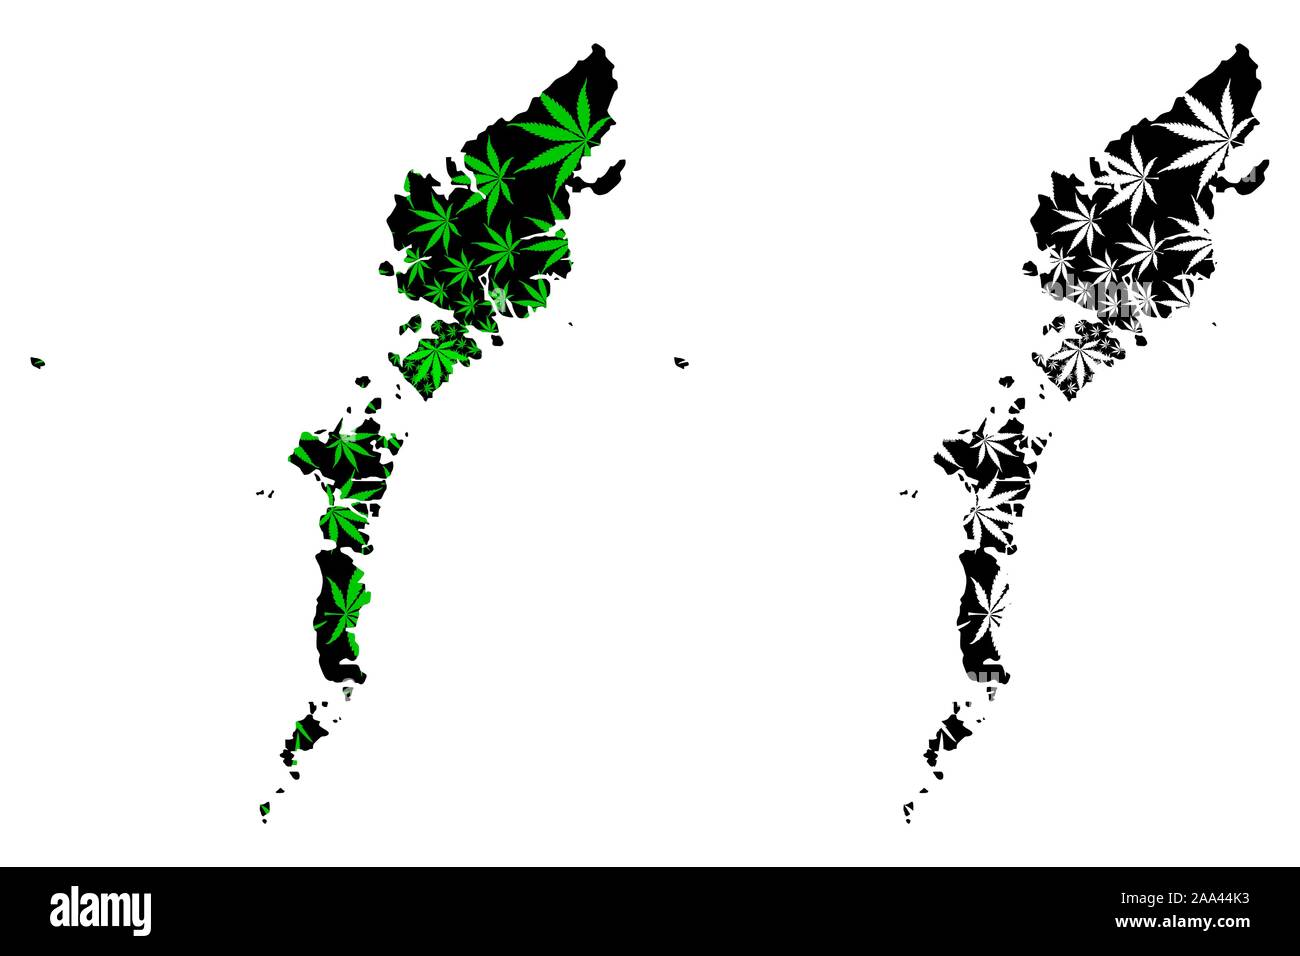 Comhairle nan Eilean Siar (Royaume-Uni) La carte est conçue de feuilles de cannabis vert et noir, Na h-Eileanan Siar (Hébrides extérieures et à l'île de Lewis) ma carte Illustration de Vecteur